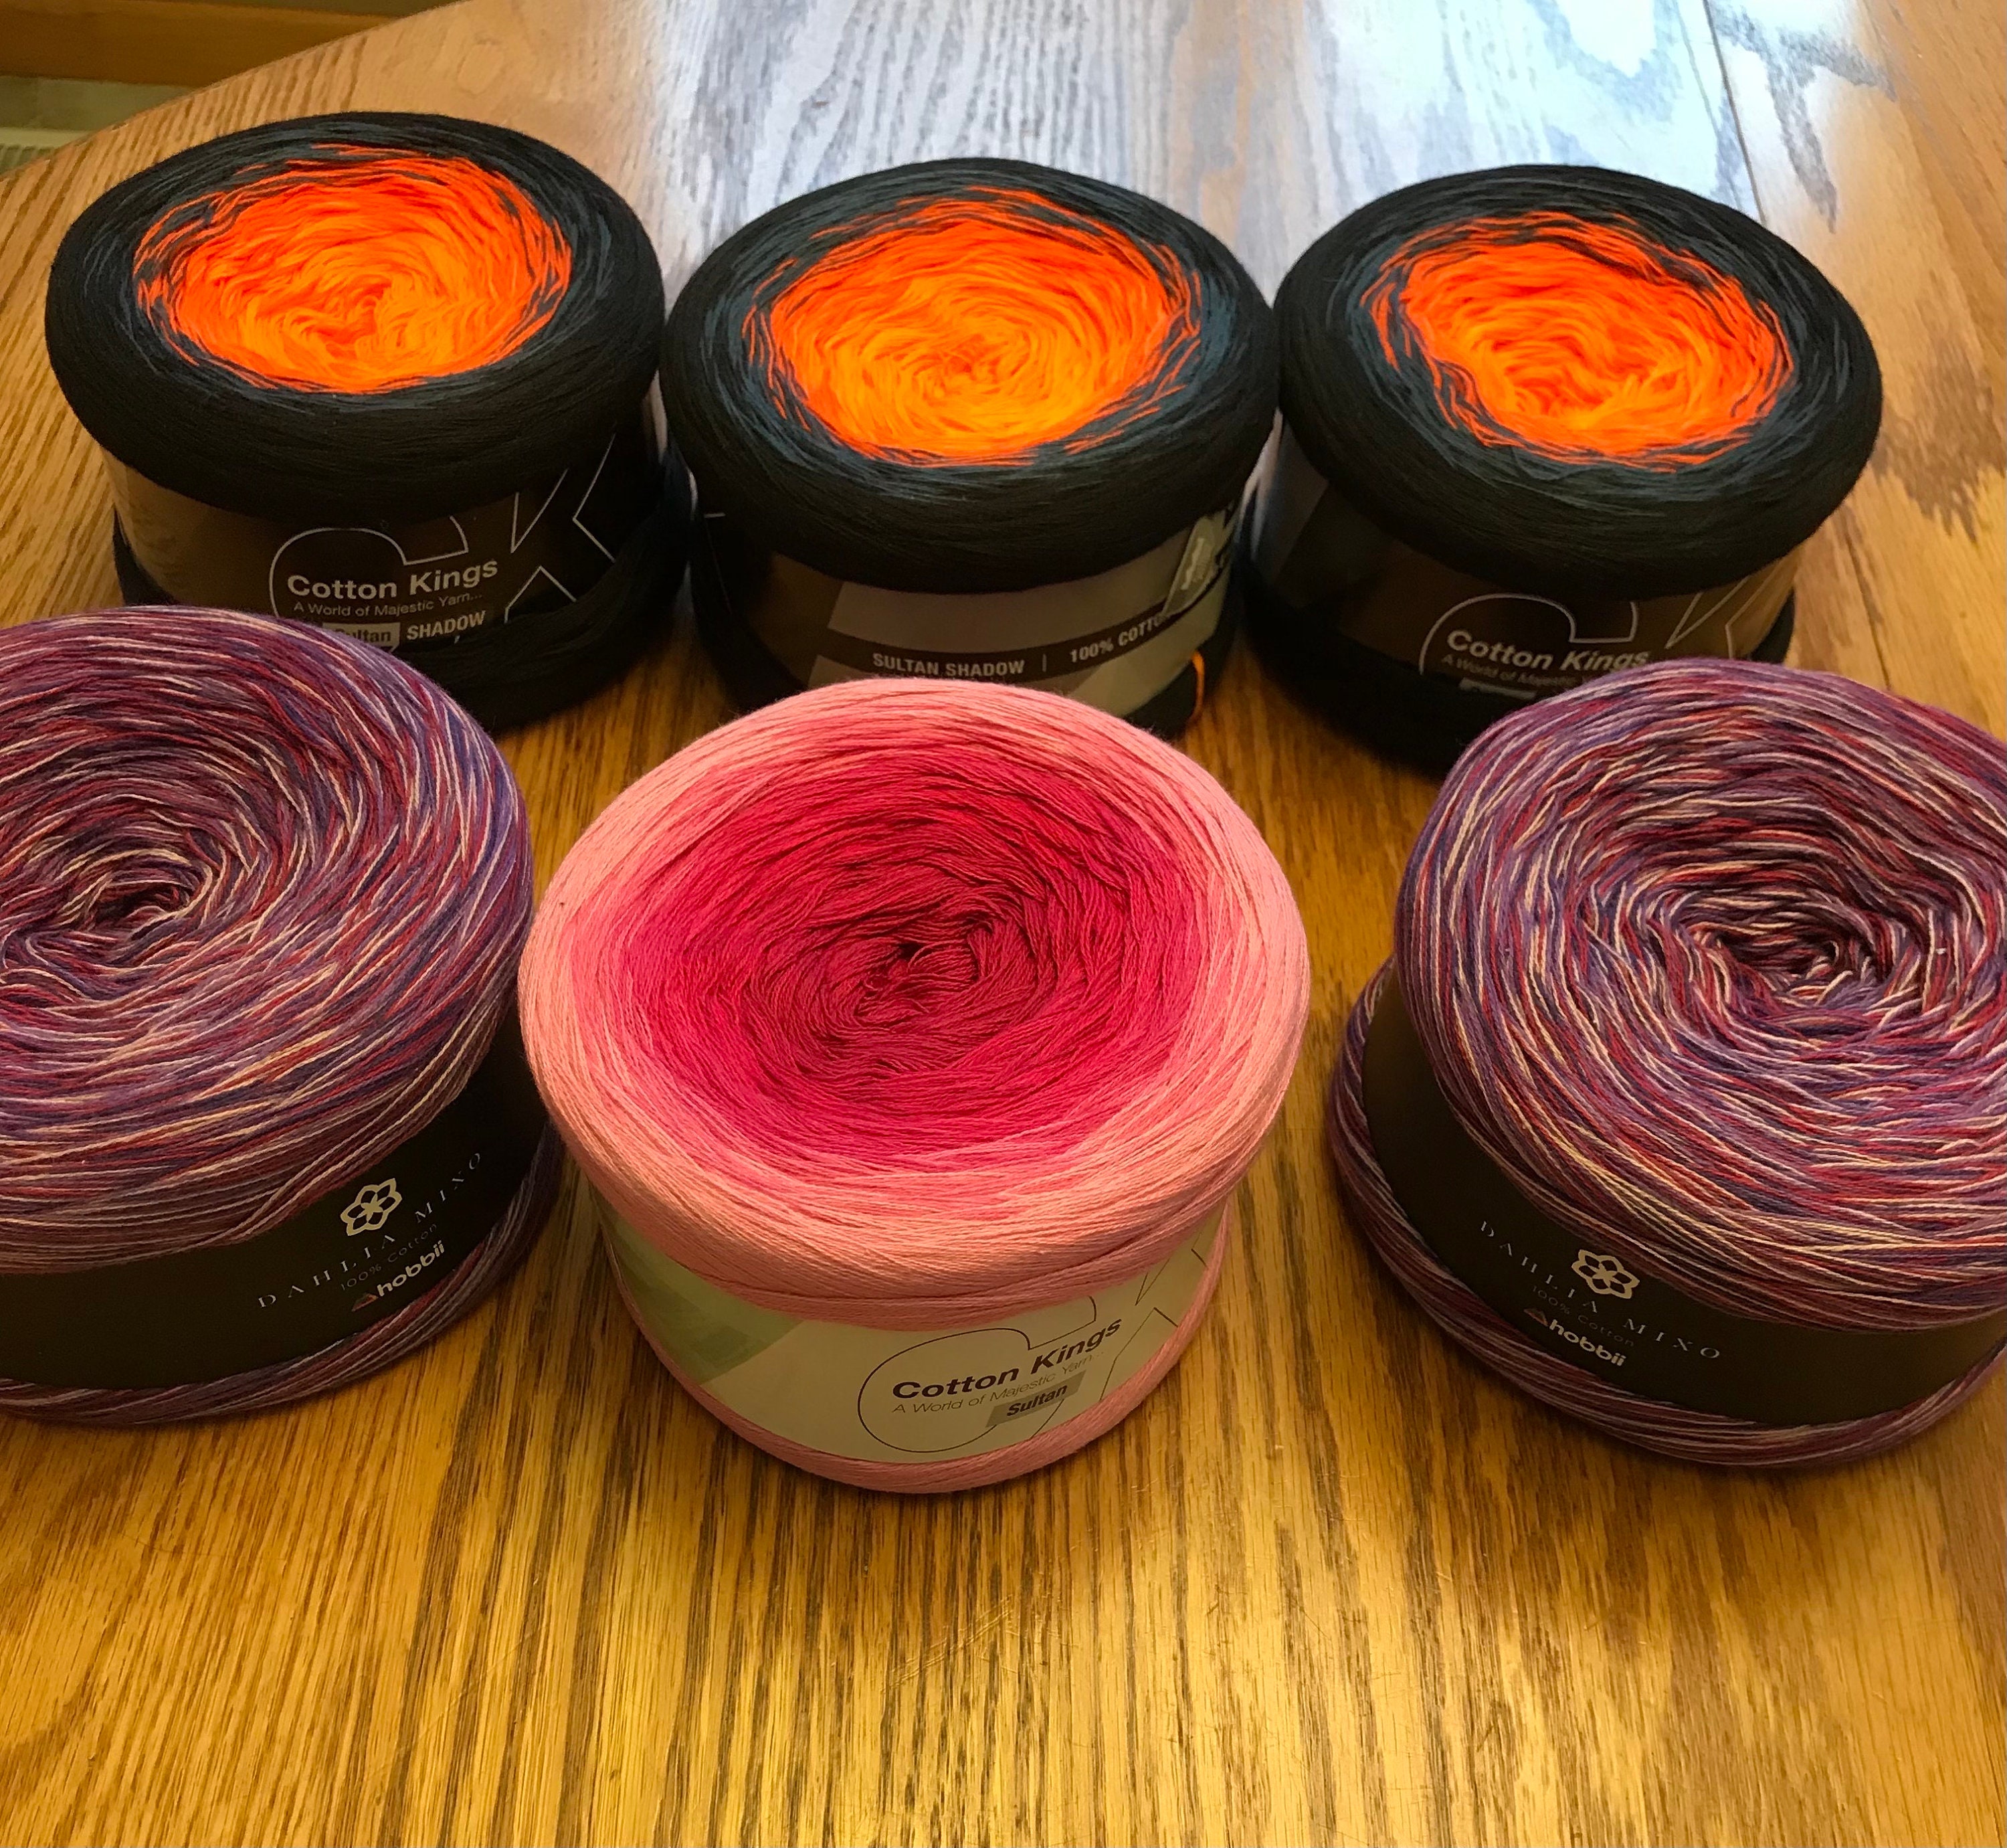 Madness 1 Pastel Rainbow Yarn 3ply Yarn Wolltraum Gradient Yarn Lace Weight  Yarn Unique Yarn Cotton Yarn Acrylic Yarn Yarn 